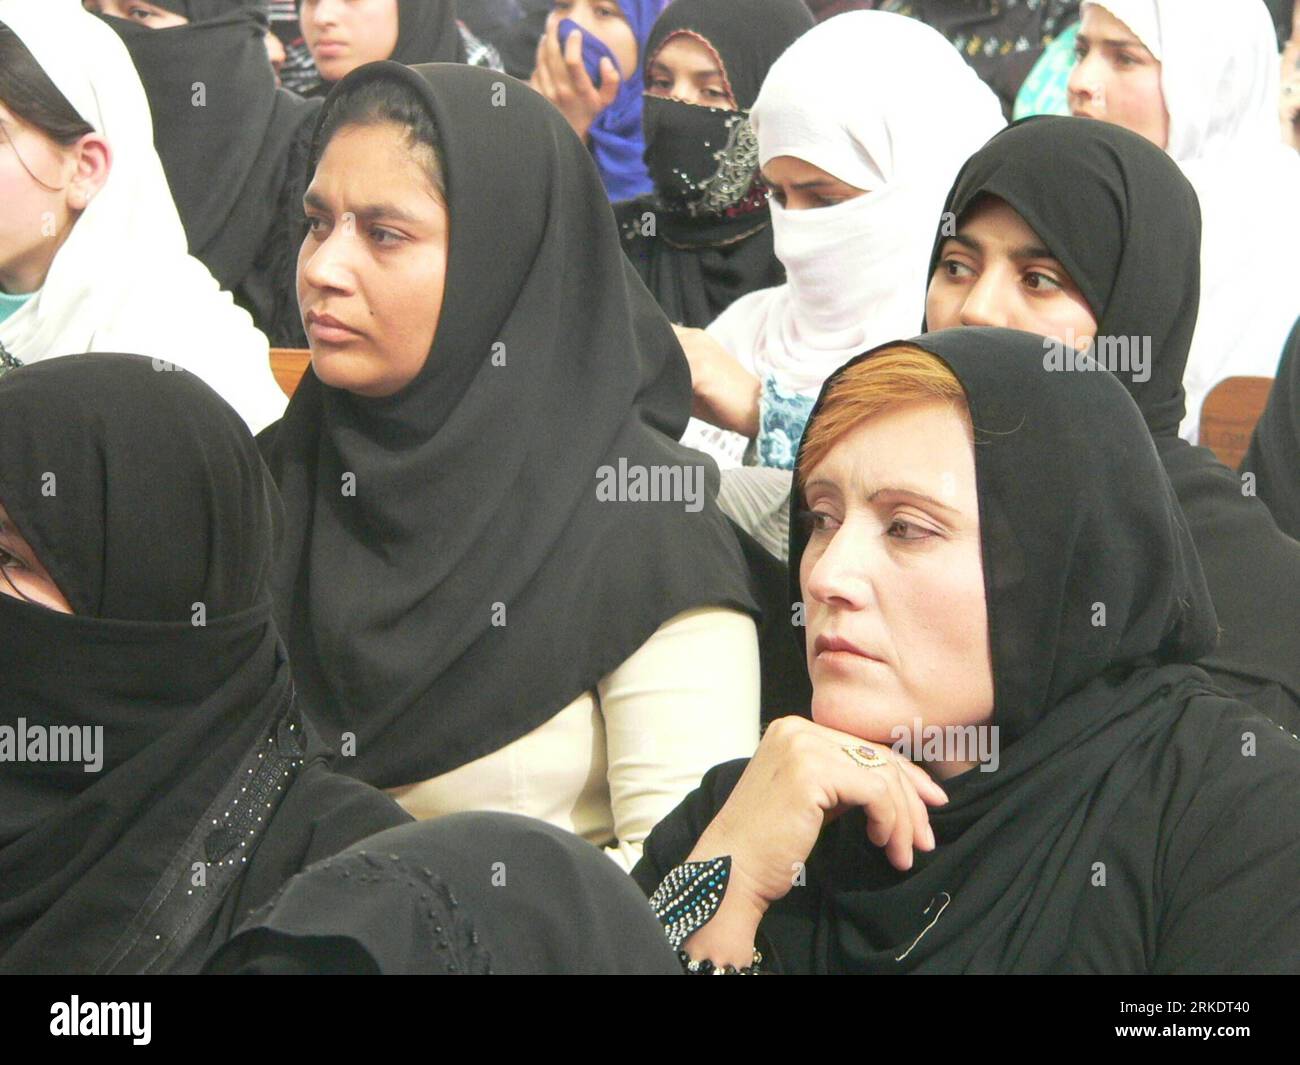 Bildnummer: 54997820 Datum: 08.03.2011 Copyright: imago/Xinhua (110308) -- KANDAHAR, 8. März 2011 (Xinhua) -- Frauen feierten den Internationalen Frauentag in Kandahar, der Hauptstadt der südlichen Provinz Kandahar in Afghanistan, am 8. März 2011. Afghanische Frauen feierten den Internationalen Frauentag in einer Zeremonie, in der auch die Abschlussfeier von rund 300 Studenten gefeiert wird, die hauptsächlich aus jungen afghanischen Mädchen bestehen. Im Afghan Canada Center (ACC) lernten sie Englisch, Wirtschaft und Informatik. (Xinhua/Zalamy) (zf) AFGHANISTAN-KANDAHAR-INTERNATIONAL WOMEN S DAY PUBLICATIONxNOTxINxC Stockfoto